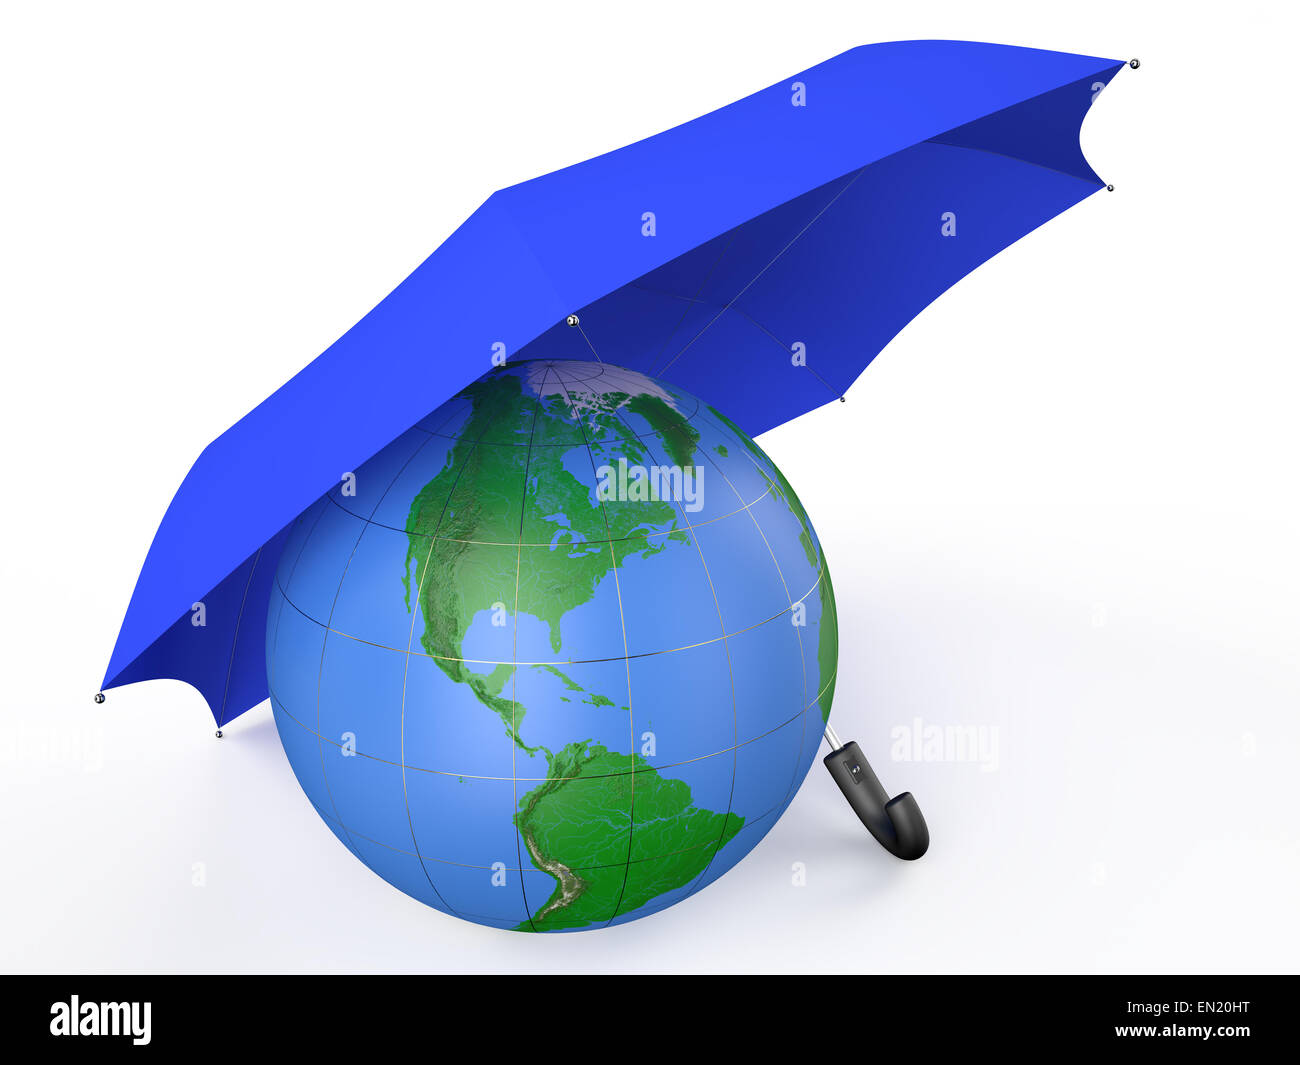 Messa a terra coperto da ombrello blu isolato su sfondo bianco Foto Stock